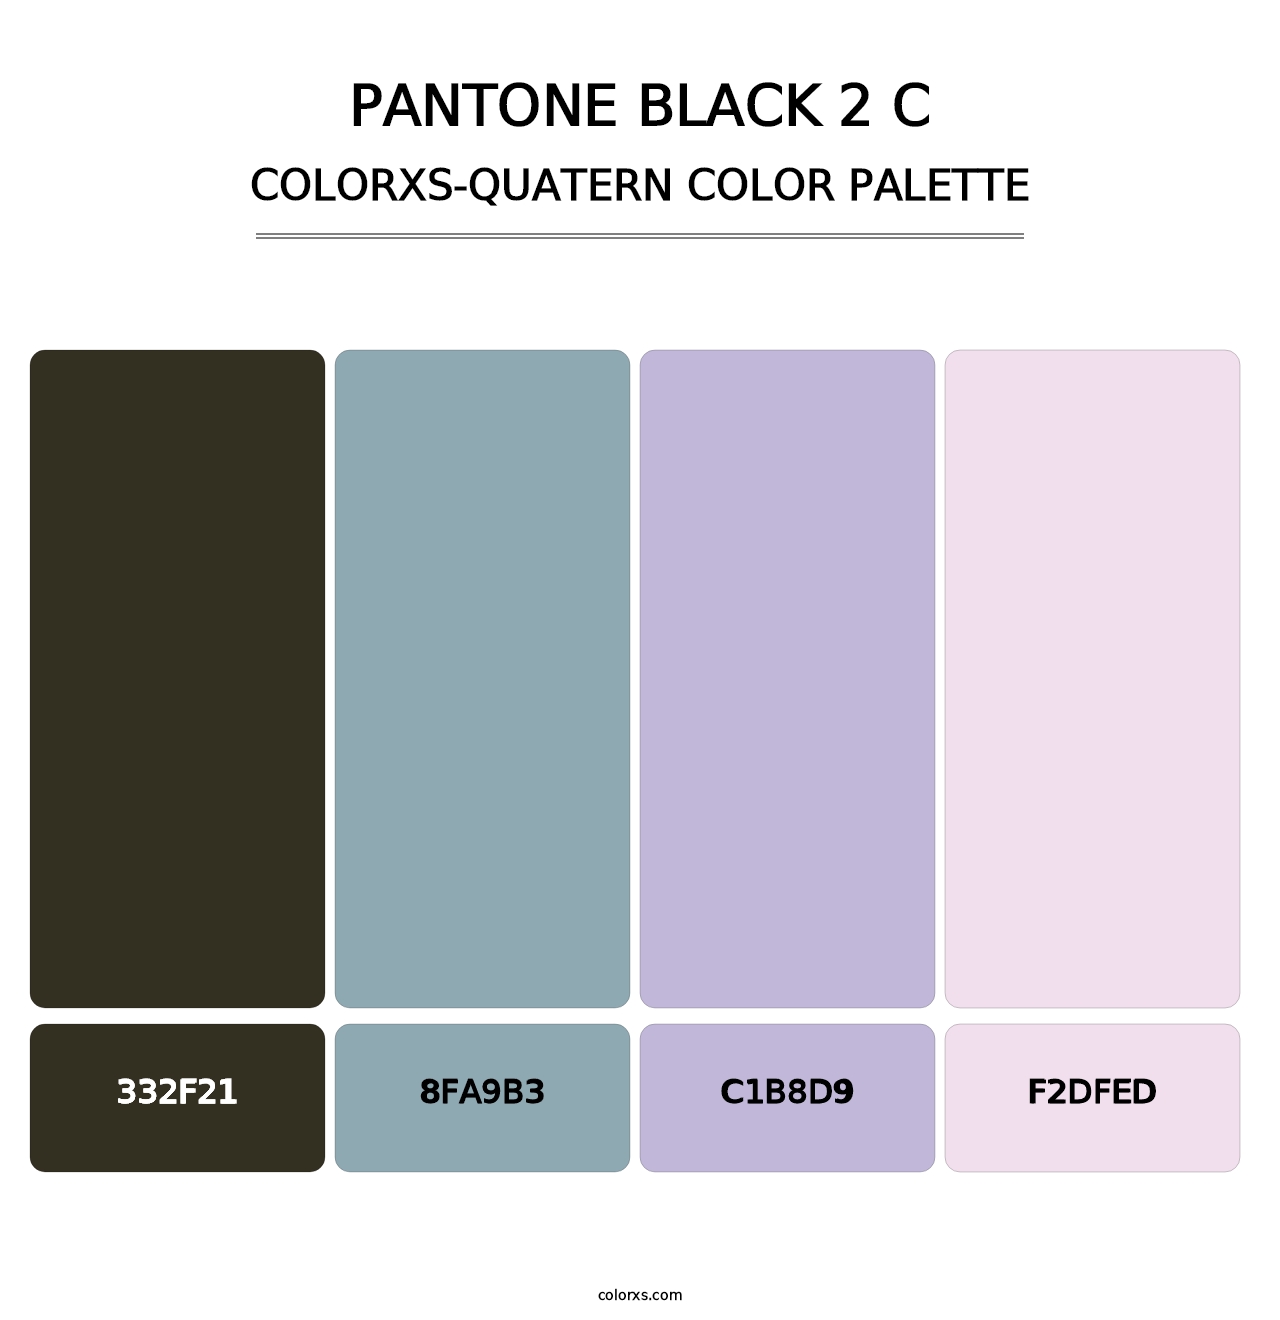 PANTONE Black 2 C - Colorxs Quatern Palette